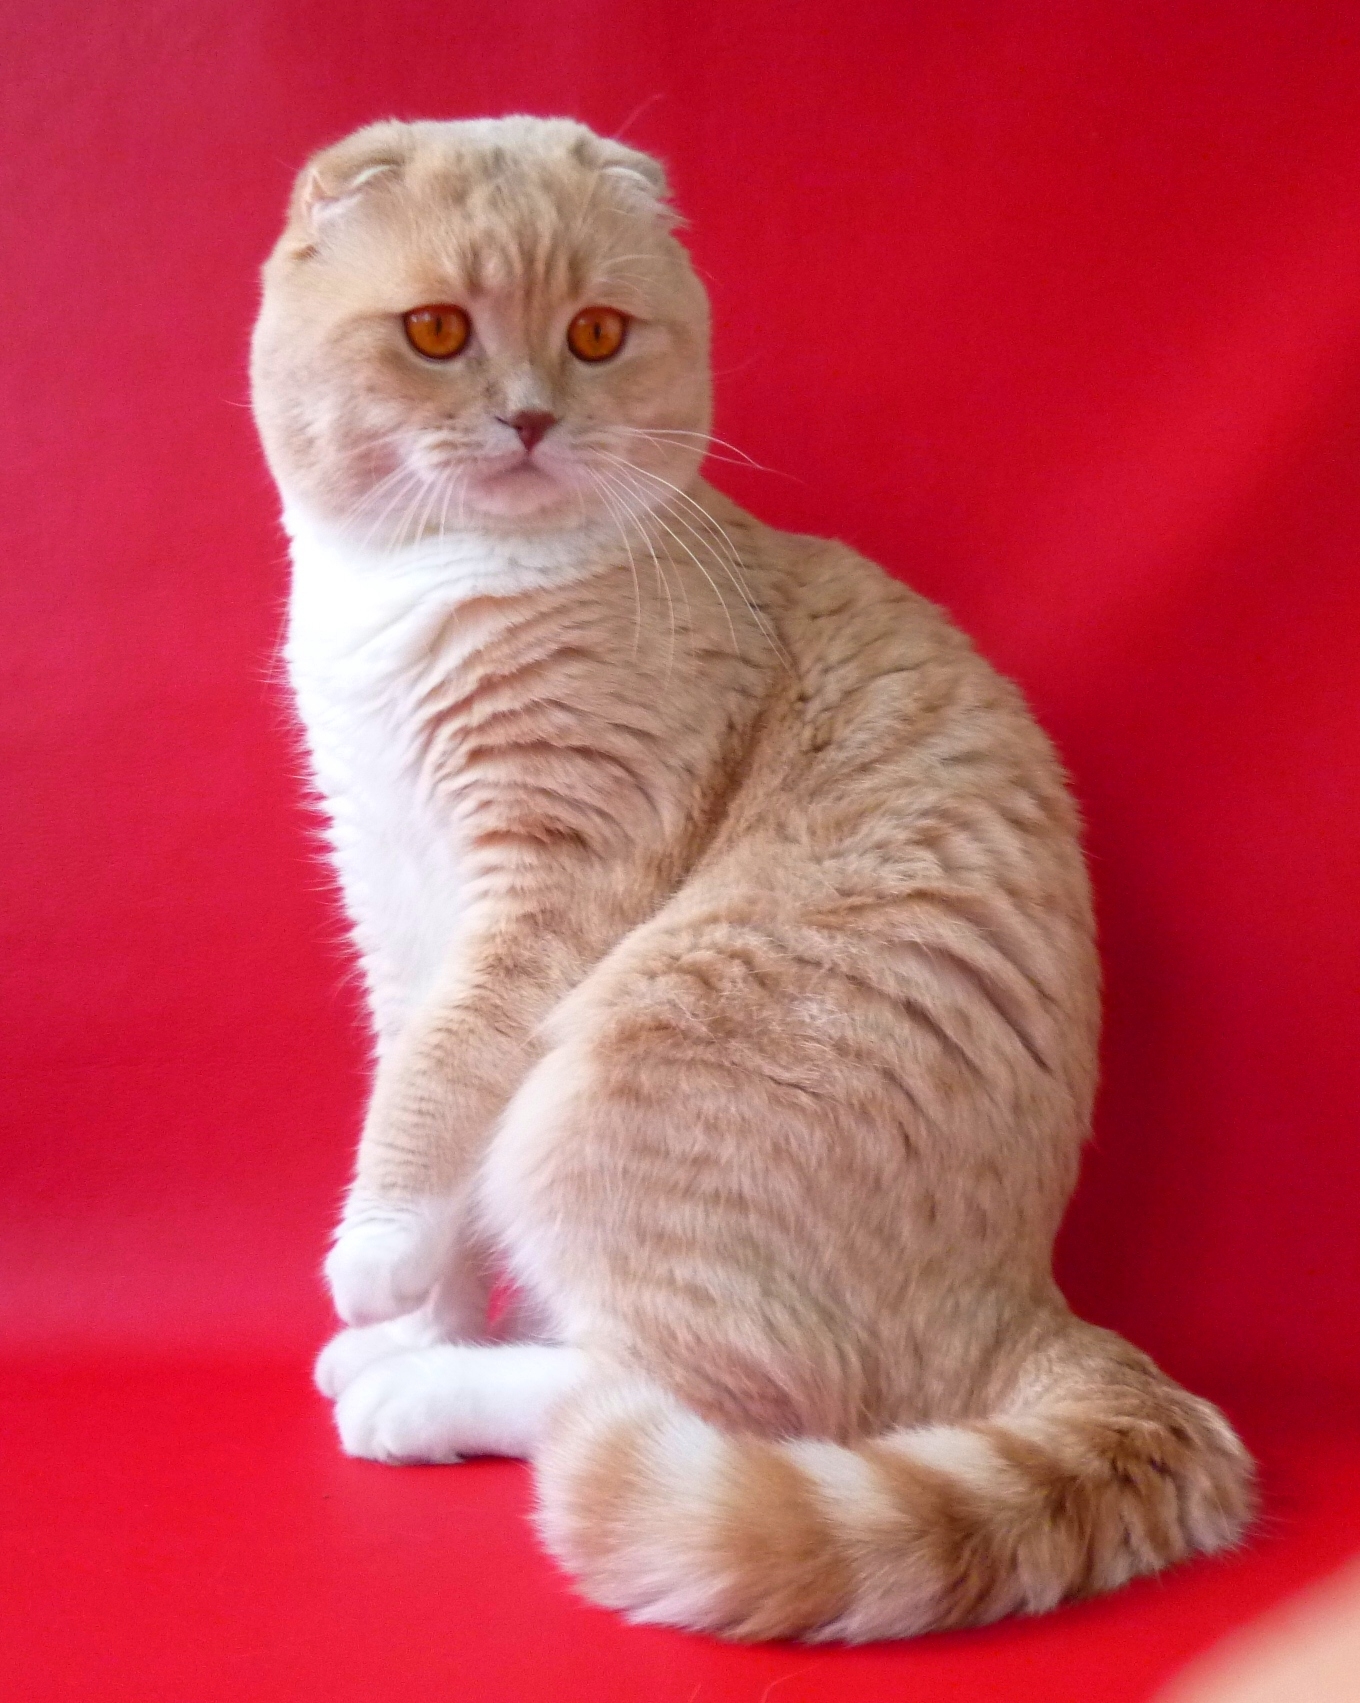 Шотландская вислоухая кот персиковый - картинки и фото koshka.top